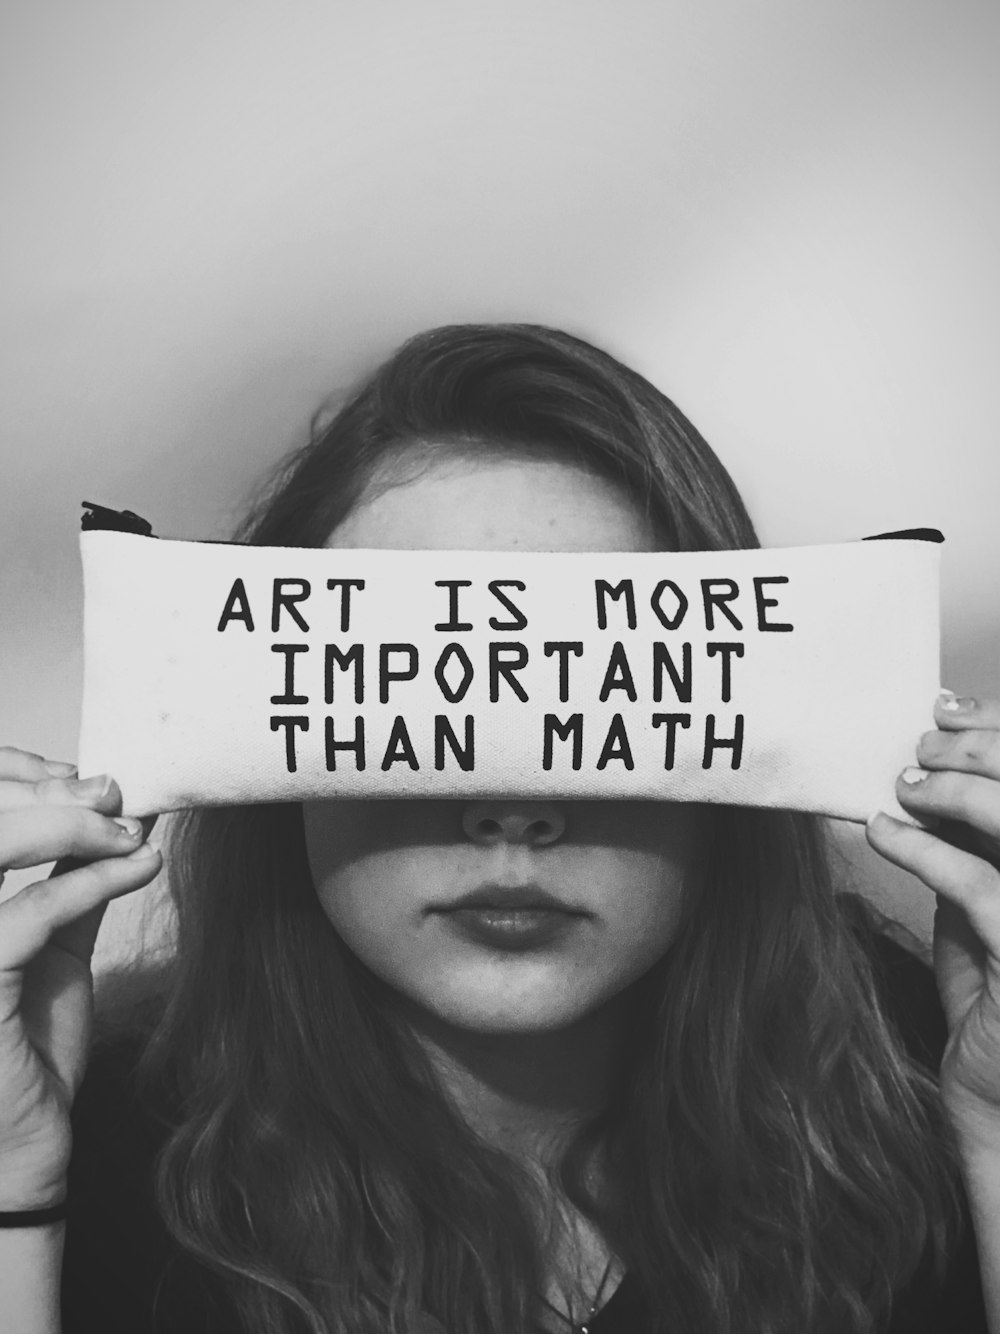 Eine Frau, die ein Schild hält, auf dem steht, dass Kunst wichtiger ist als Mathematik